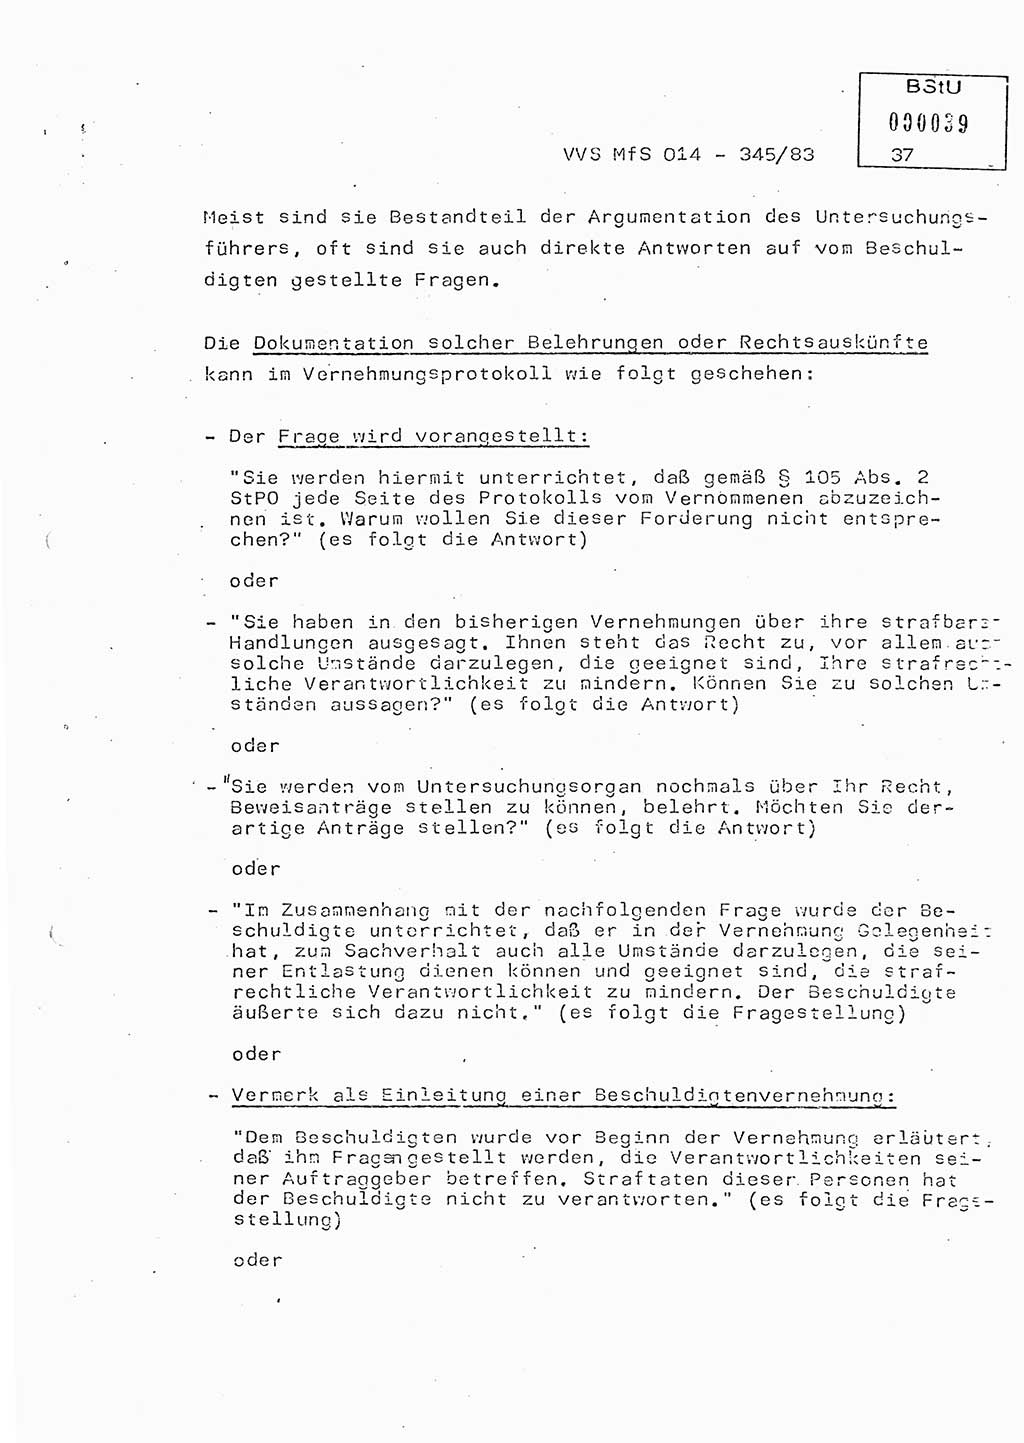 Lektion Ministerium für Staatssicherheit (MfS) [Deutsche Demokratische Republik (DDR)], Hauptabteilung (HA) Ⅸ, Vertrauliche Verschlußsache (VVS) o014-345/83, Berlin 1983, Seite 37 (Lekt. MfS DDR HA Ⅸ VVS o014-345/83 1983, S. 37)